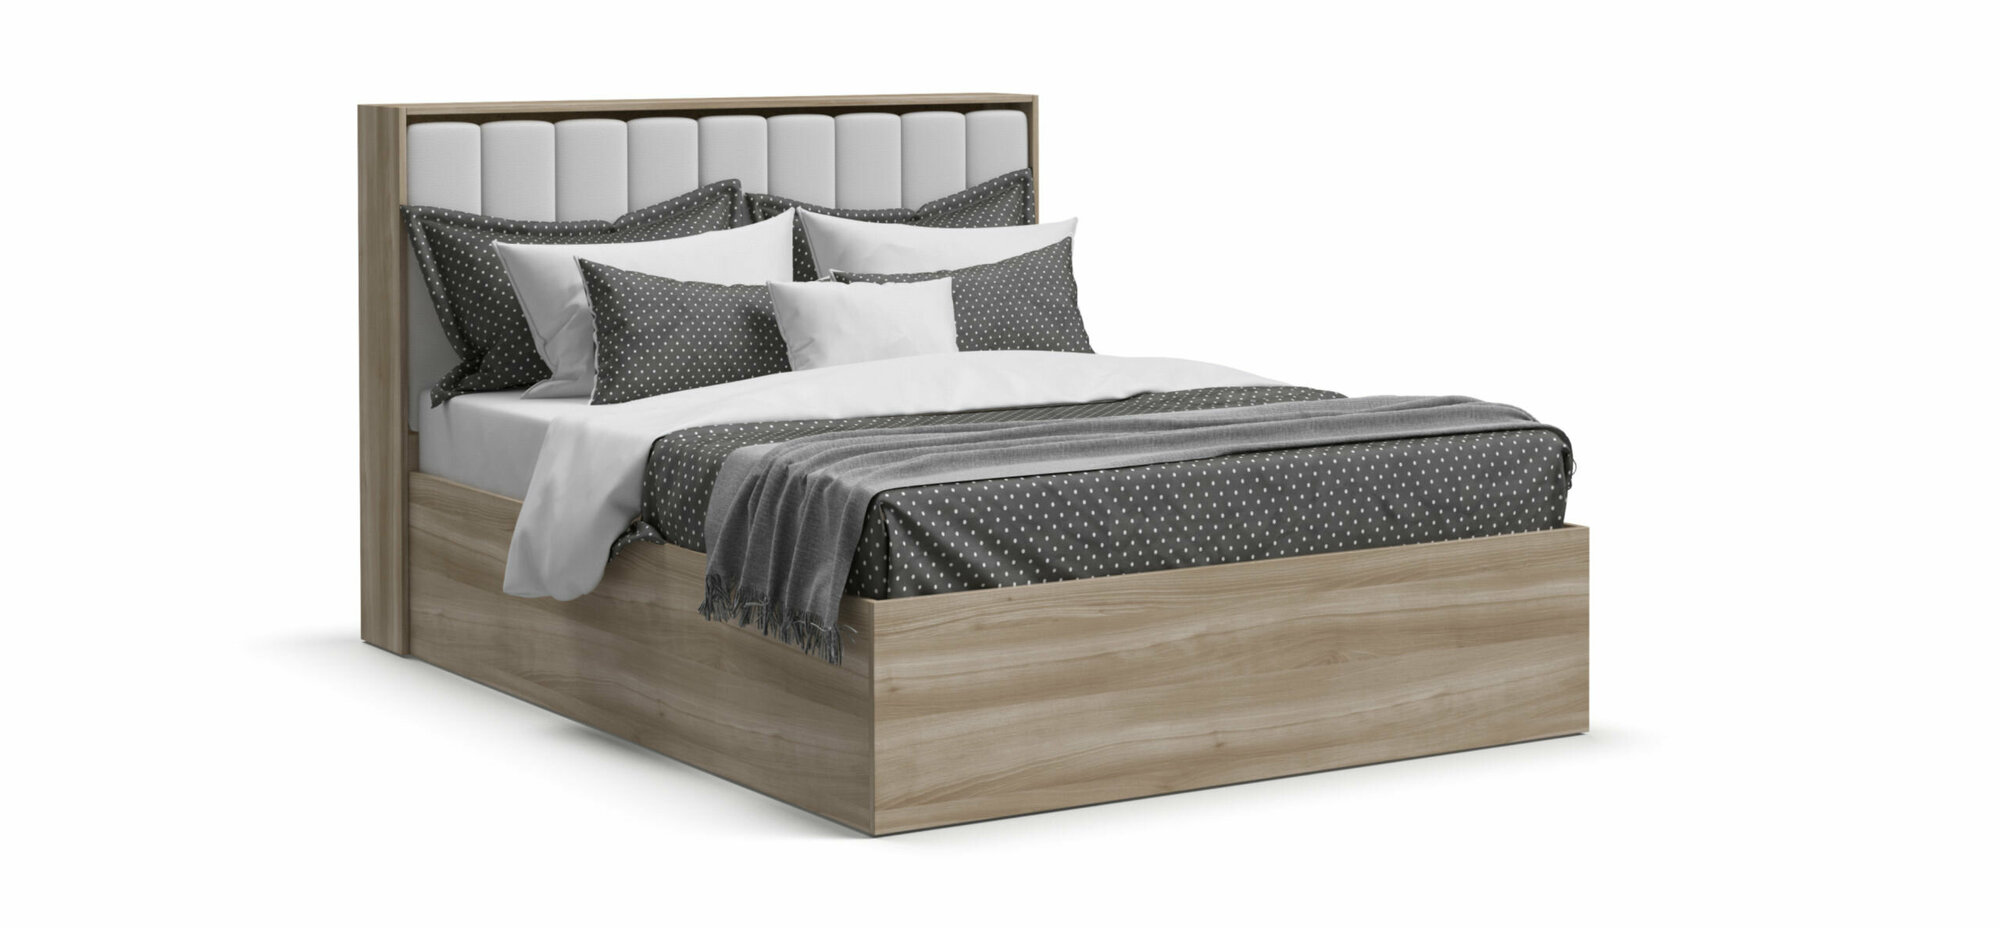 Двуспальная кровать Люкс 2.0, с подъемным механизмом, с мягким изголовьем, экокожа белая, цвет сонома, 140х200 см